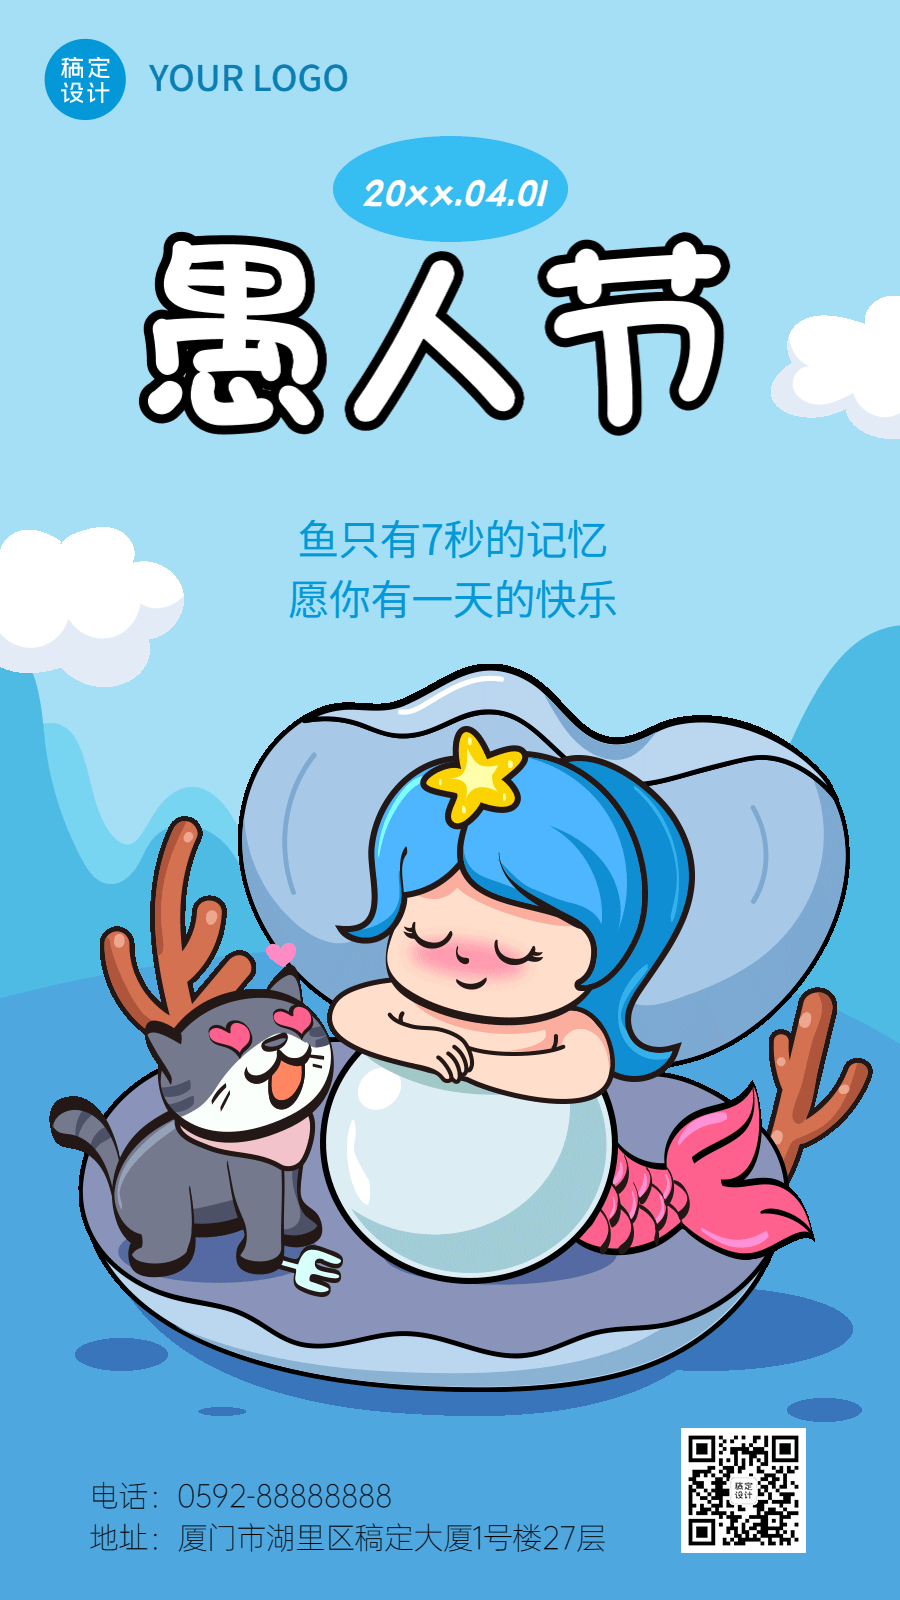 愚人节节日祝福插画动态手机海报